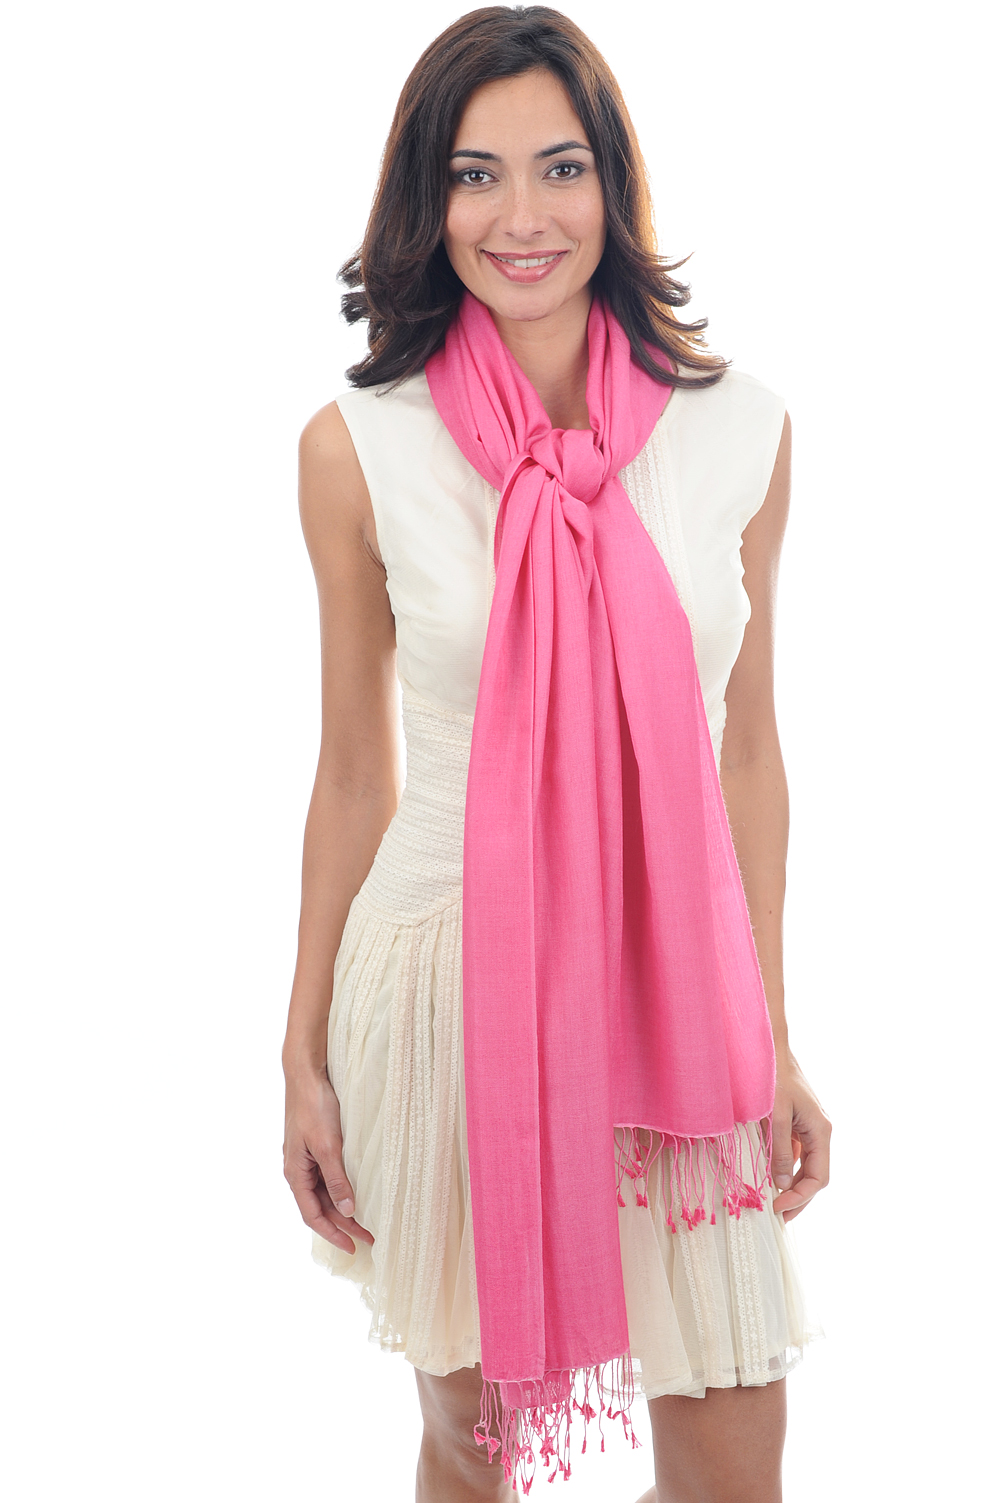 Cachemire et Soie accessoires etoles chales platine rose soutenu 201 cm x 71 cm